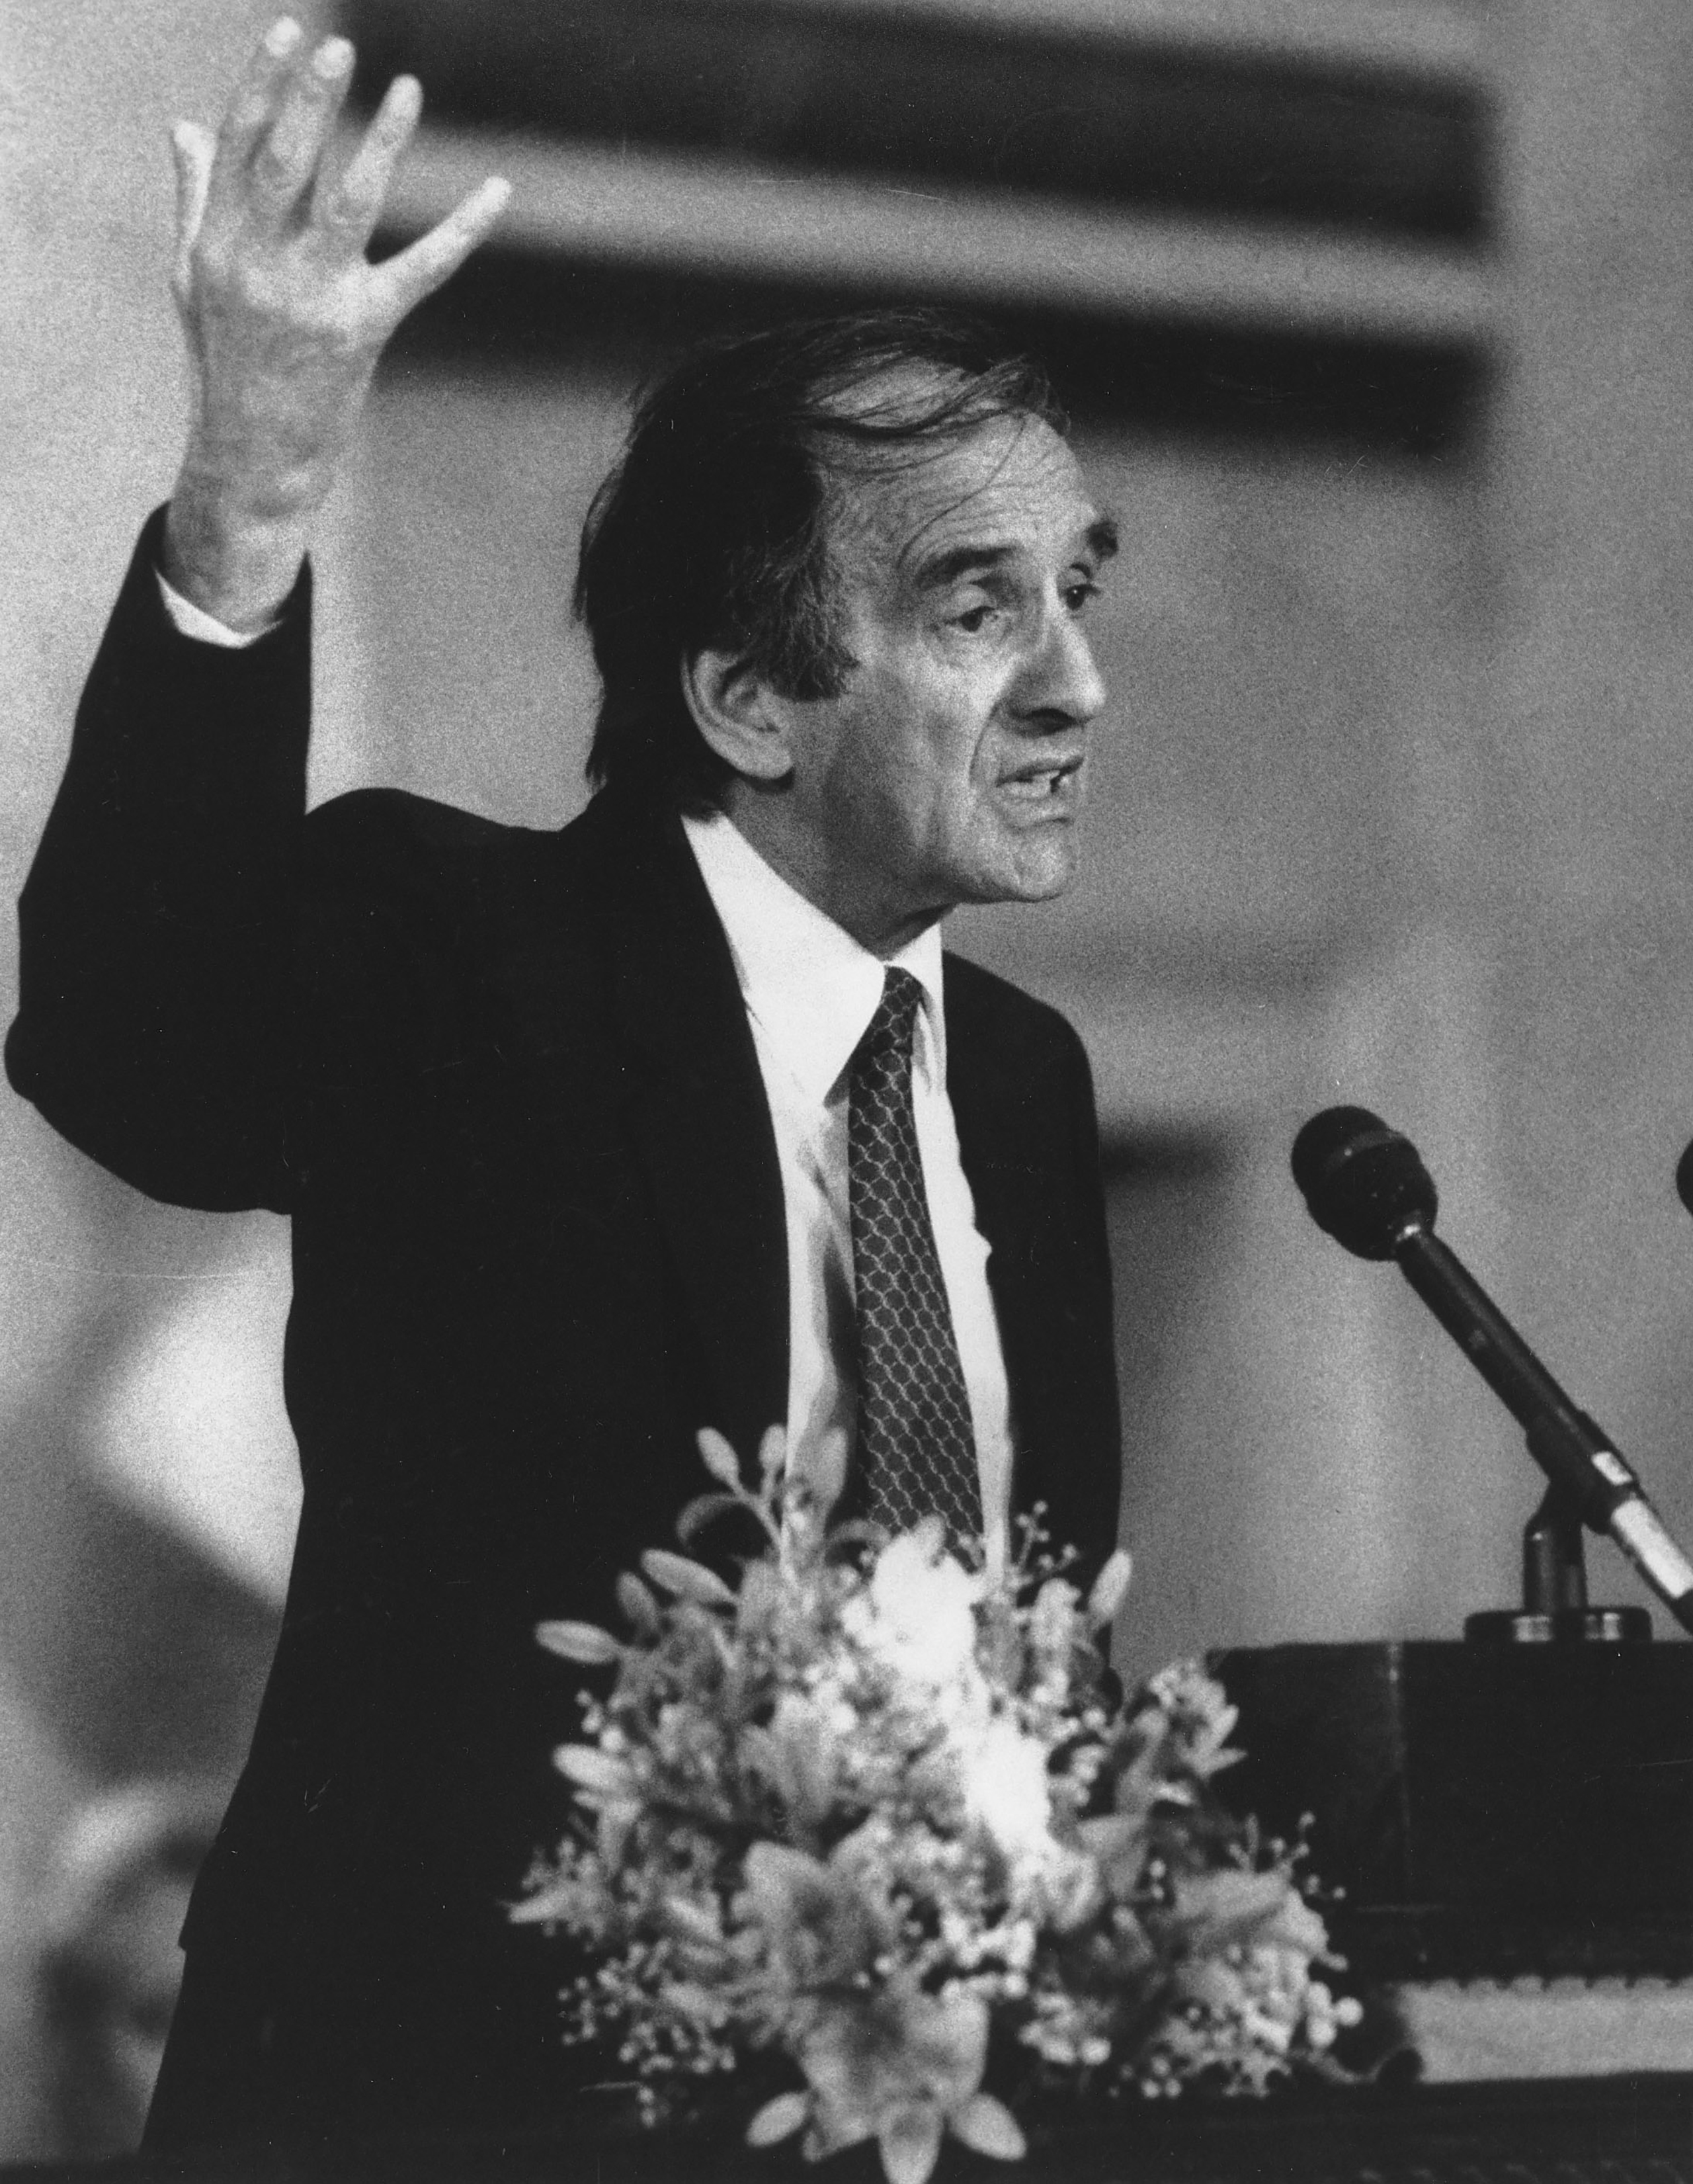 Elie Wiesel speaks after receiving the Nobel Peace Prize in Oslo on Dec. 10, 1986.